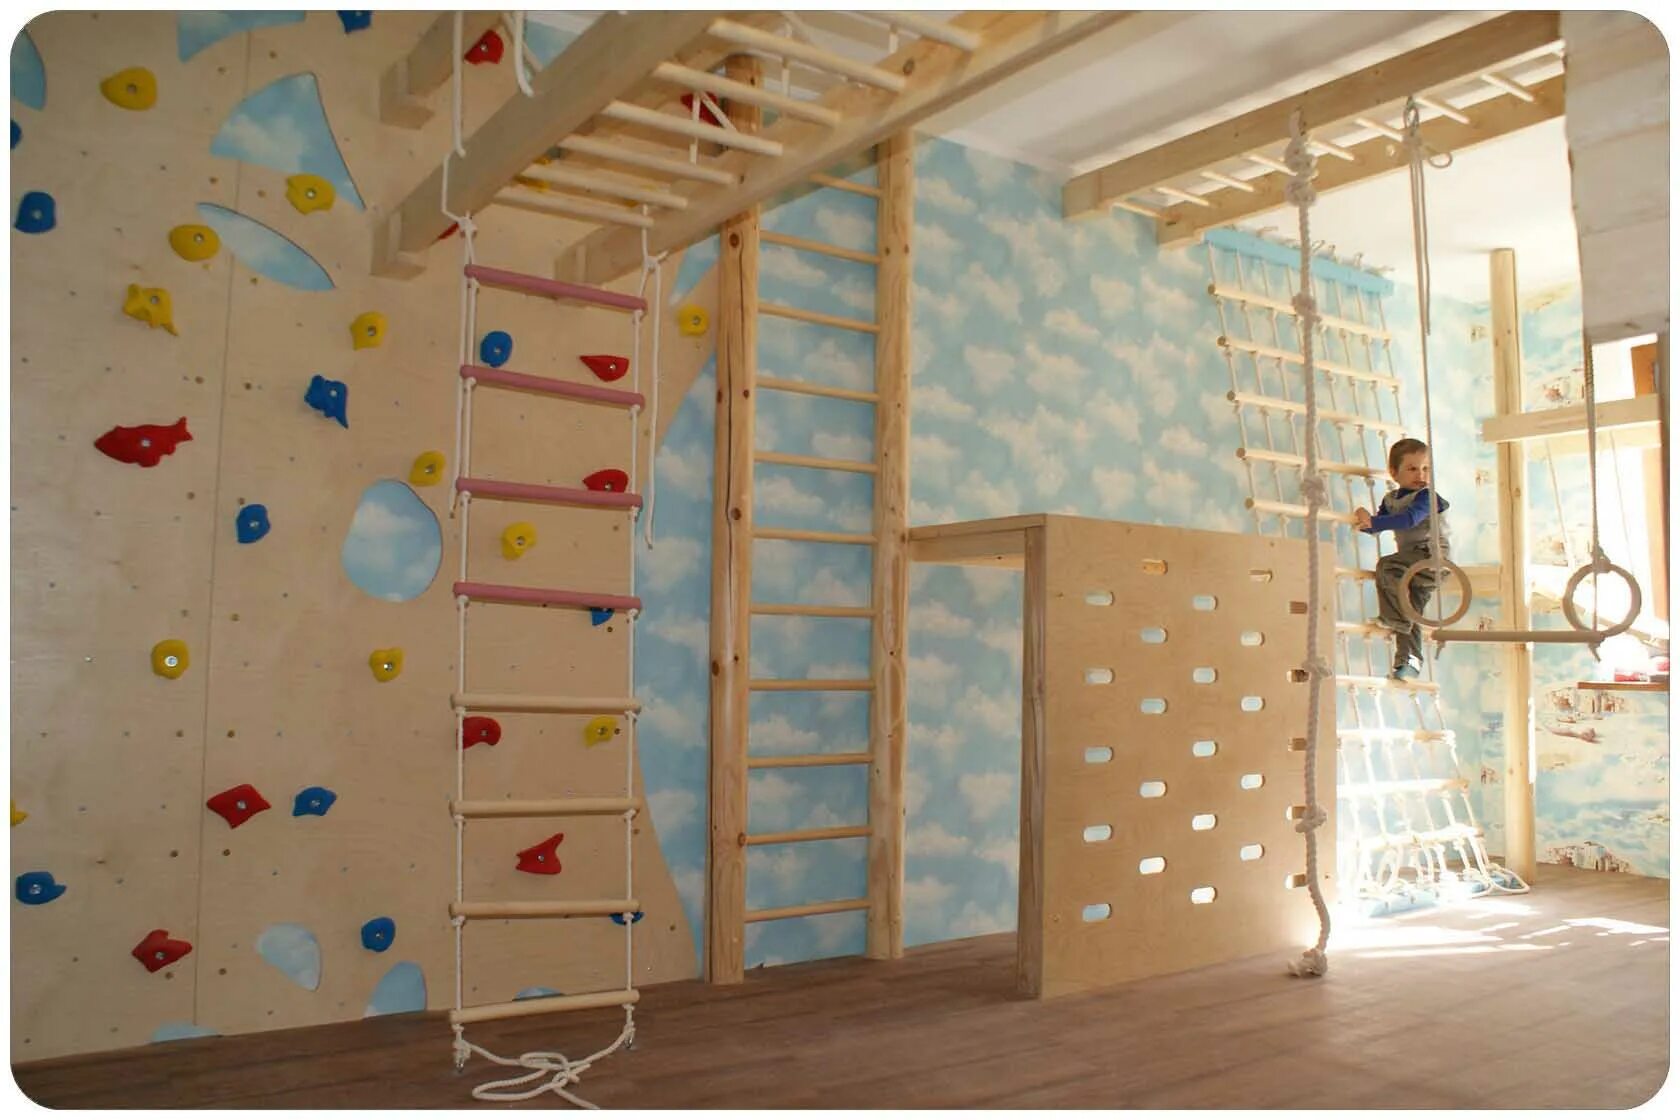 Домашний скалодром. Детский домашний скалодром. Стена для скалолазания в детской. Скалодром в квартире. Скалодром в детской.